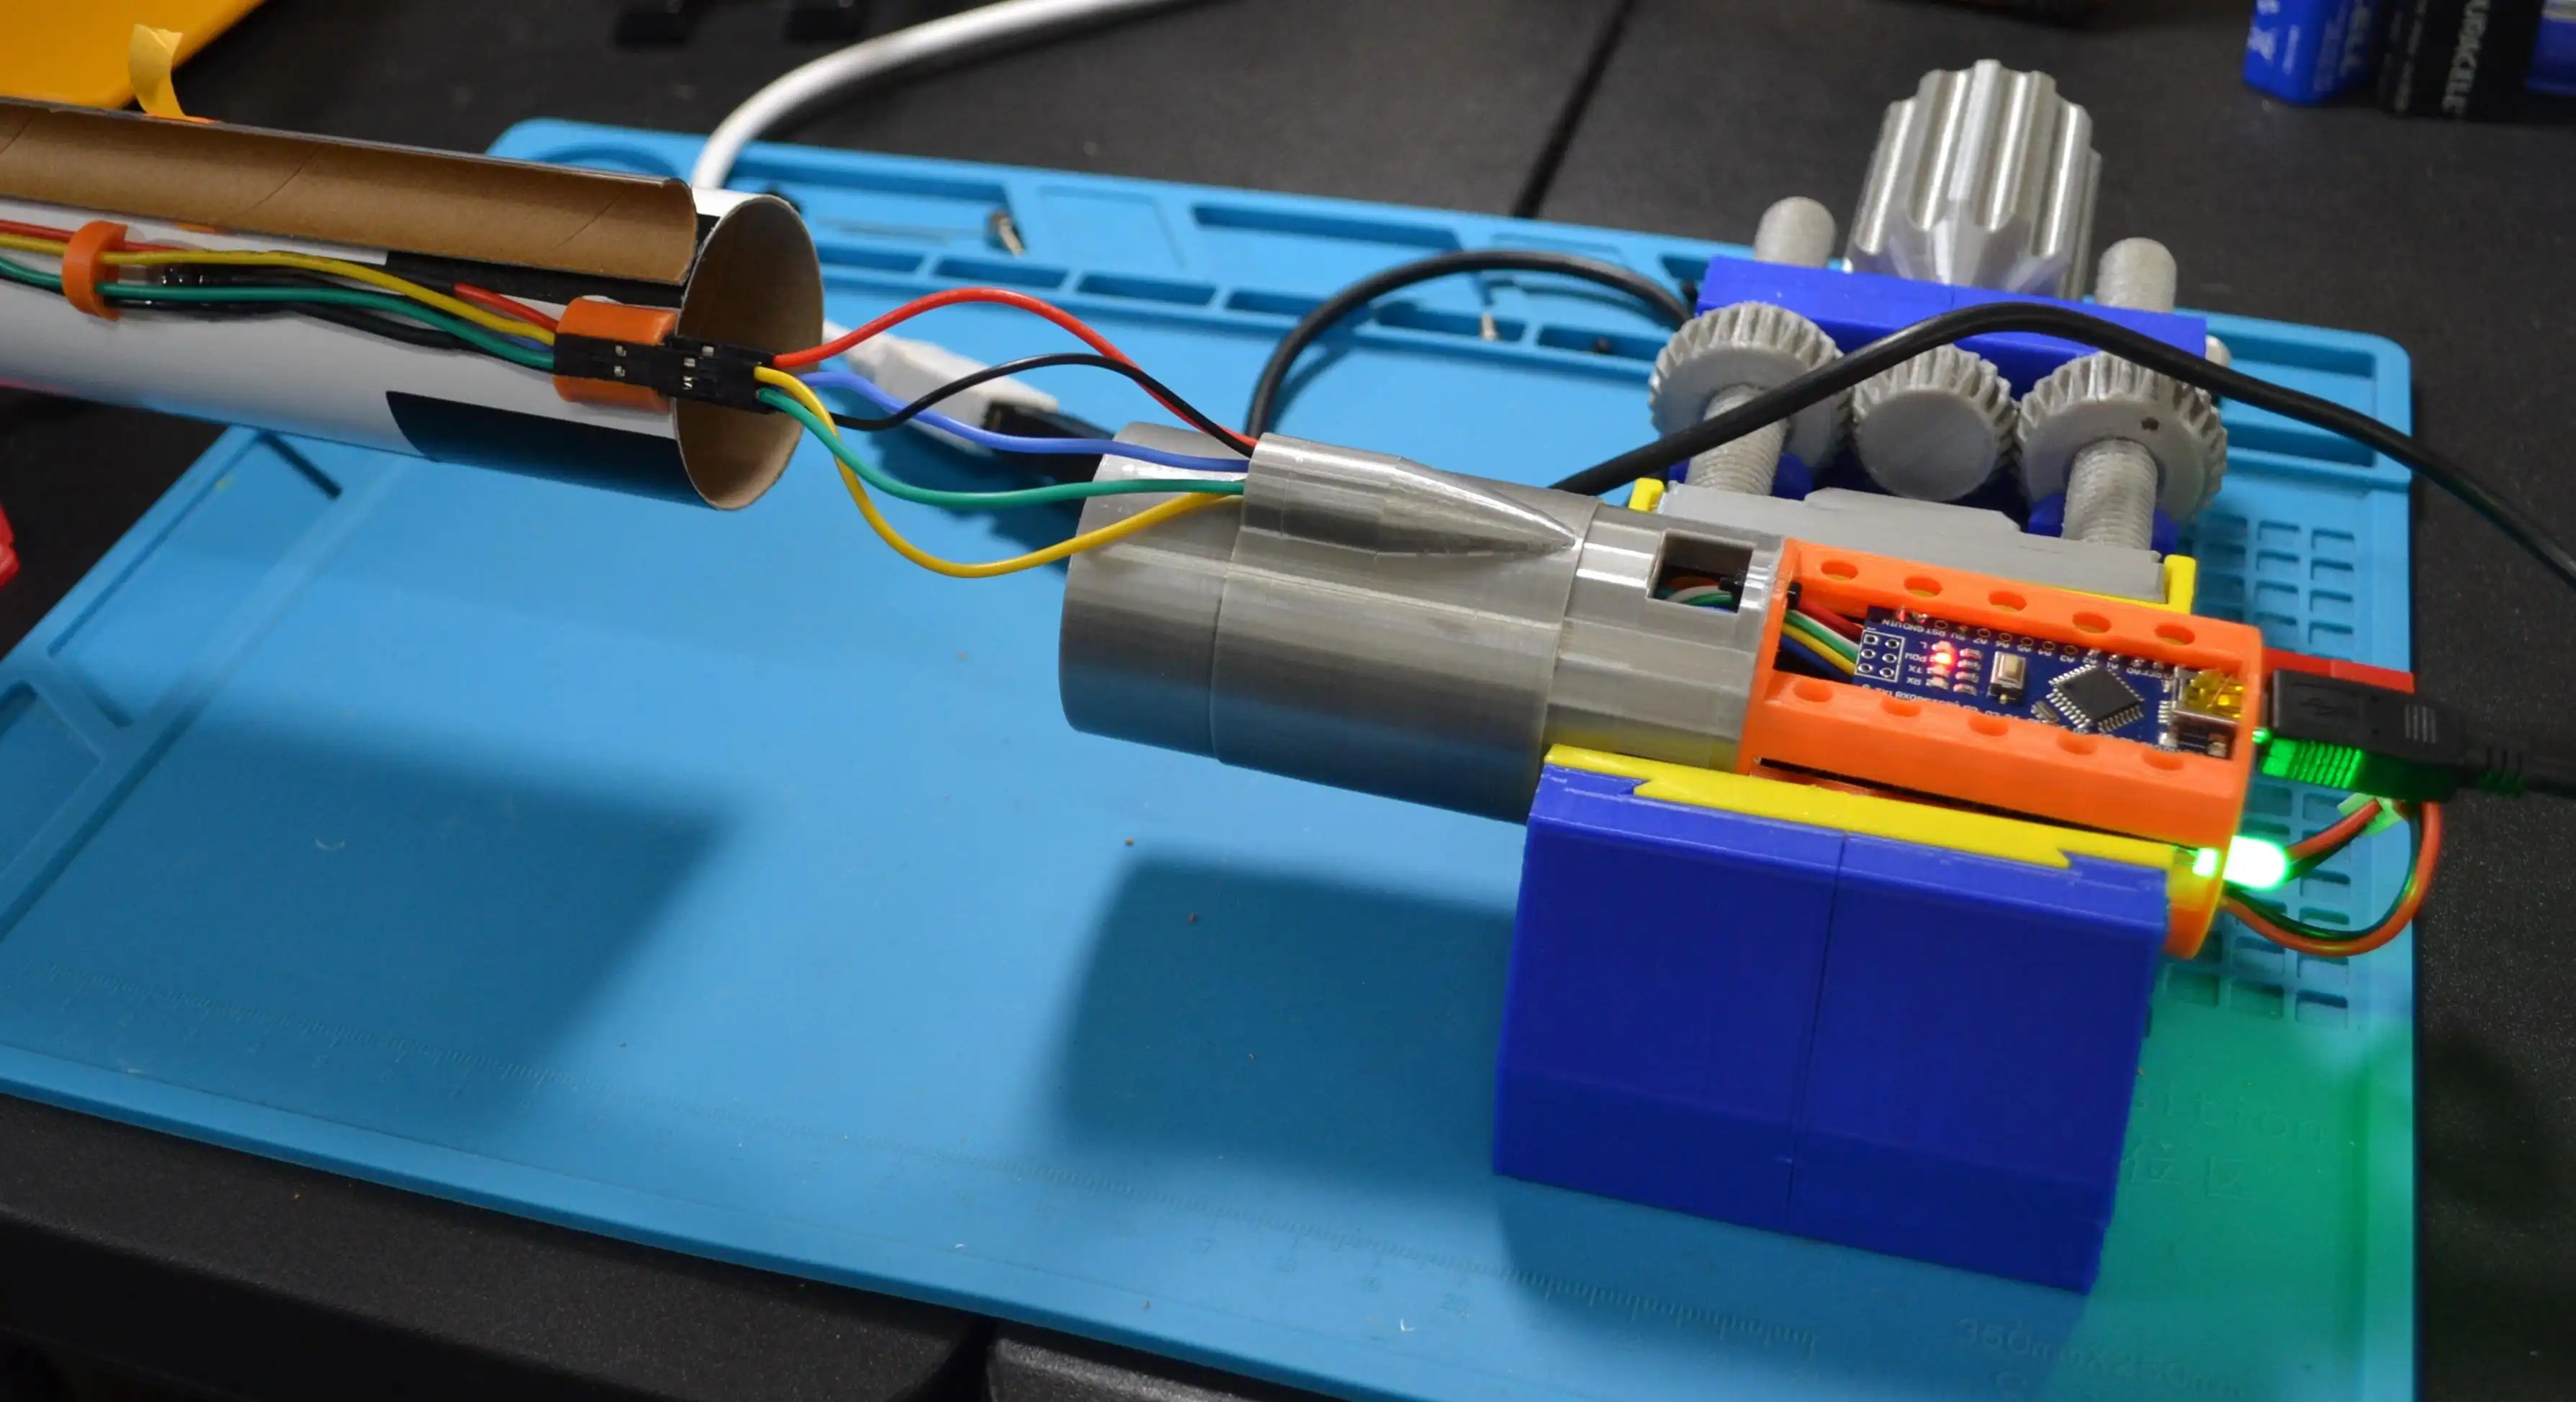 വെബ് ടൂൾ അല്ലെങ്കിൽ വെബ് ആപ്പ് ഡൗൺലോഡ് ചെയ്യുക Arduino Primary Avionics Module (A-PAM)